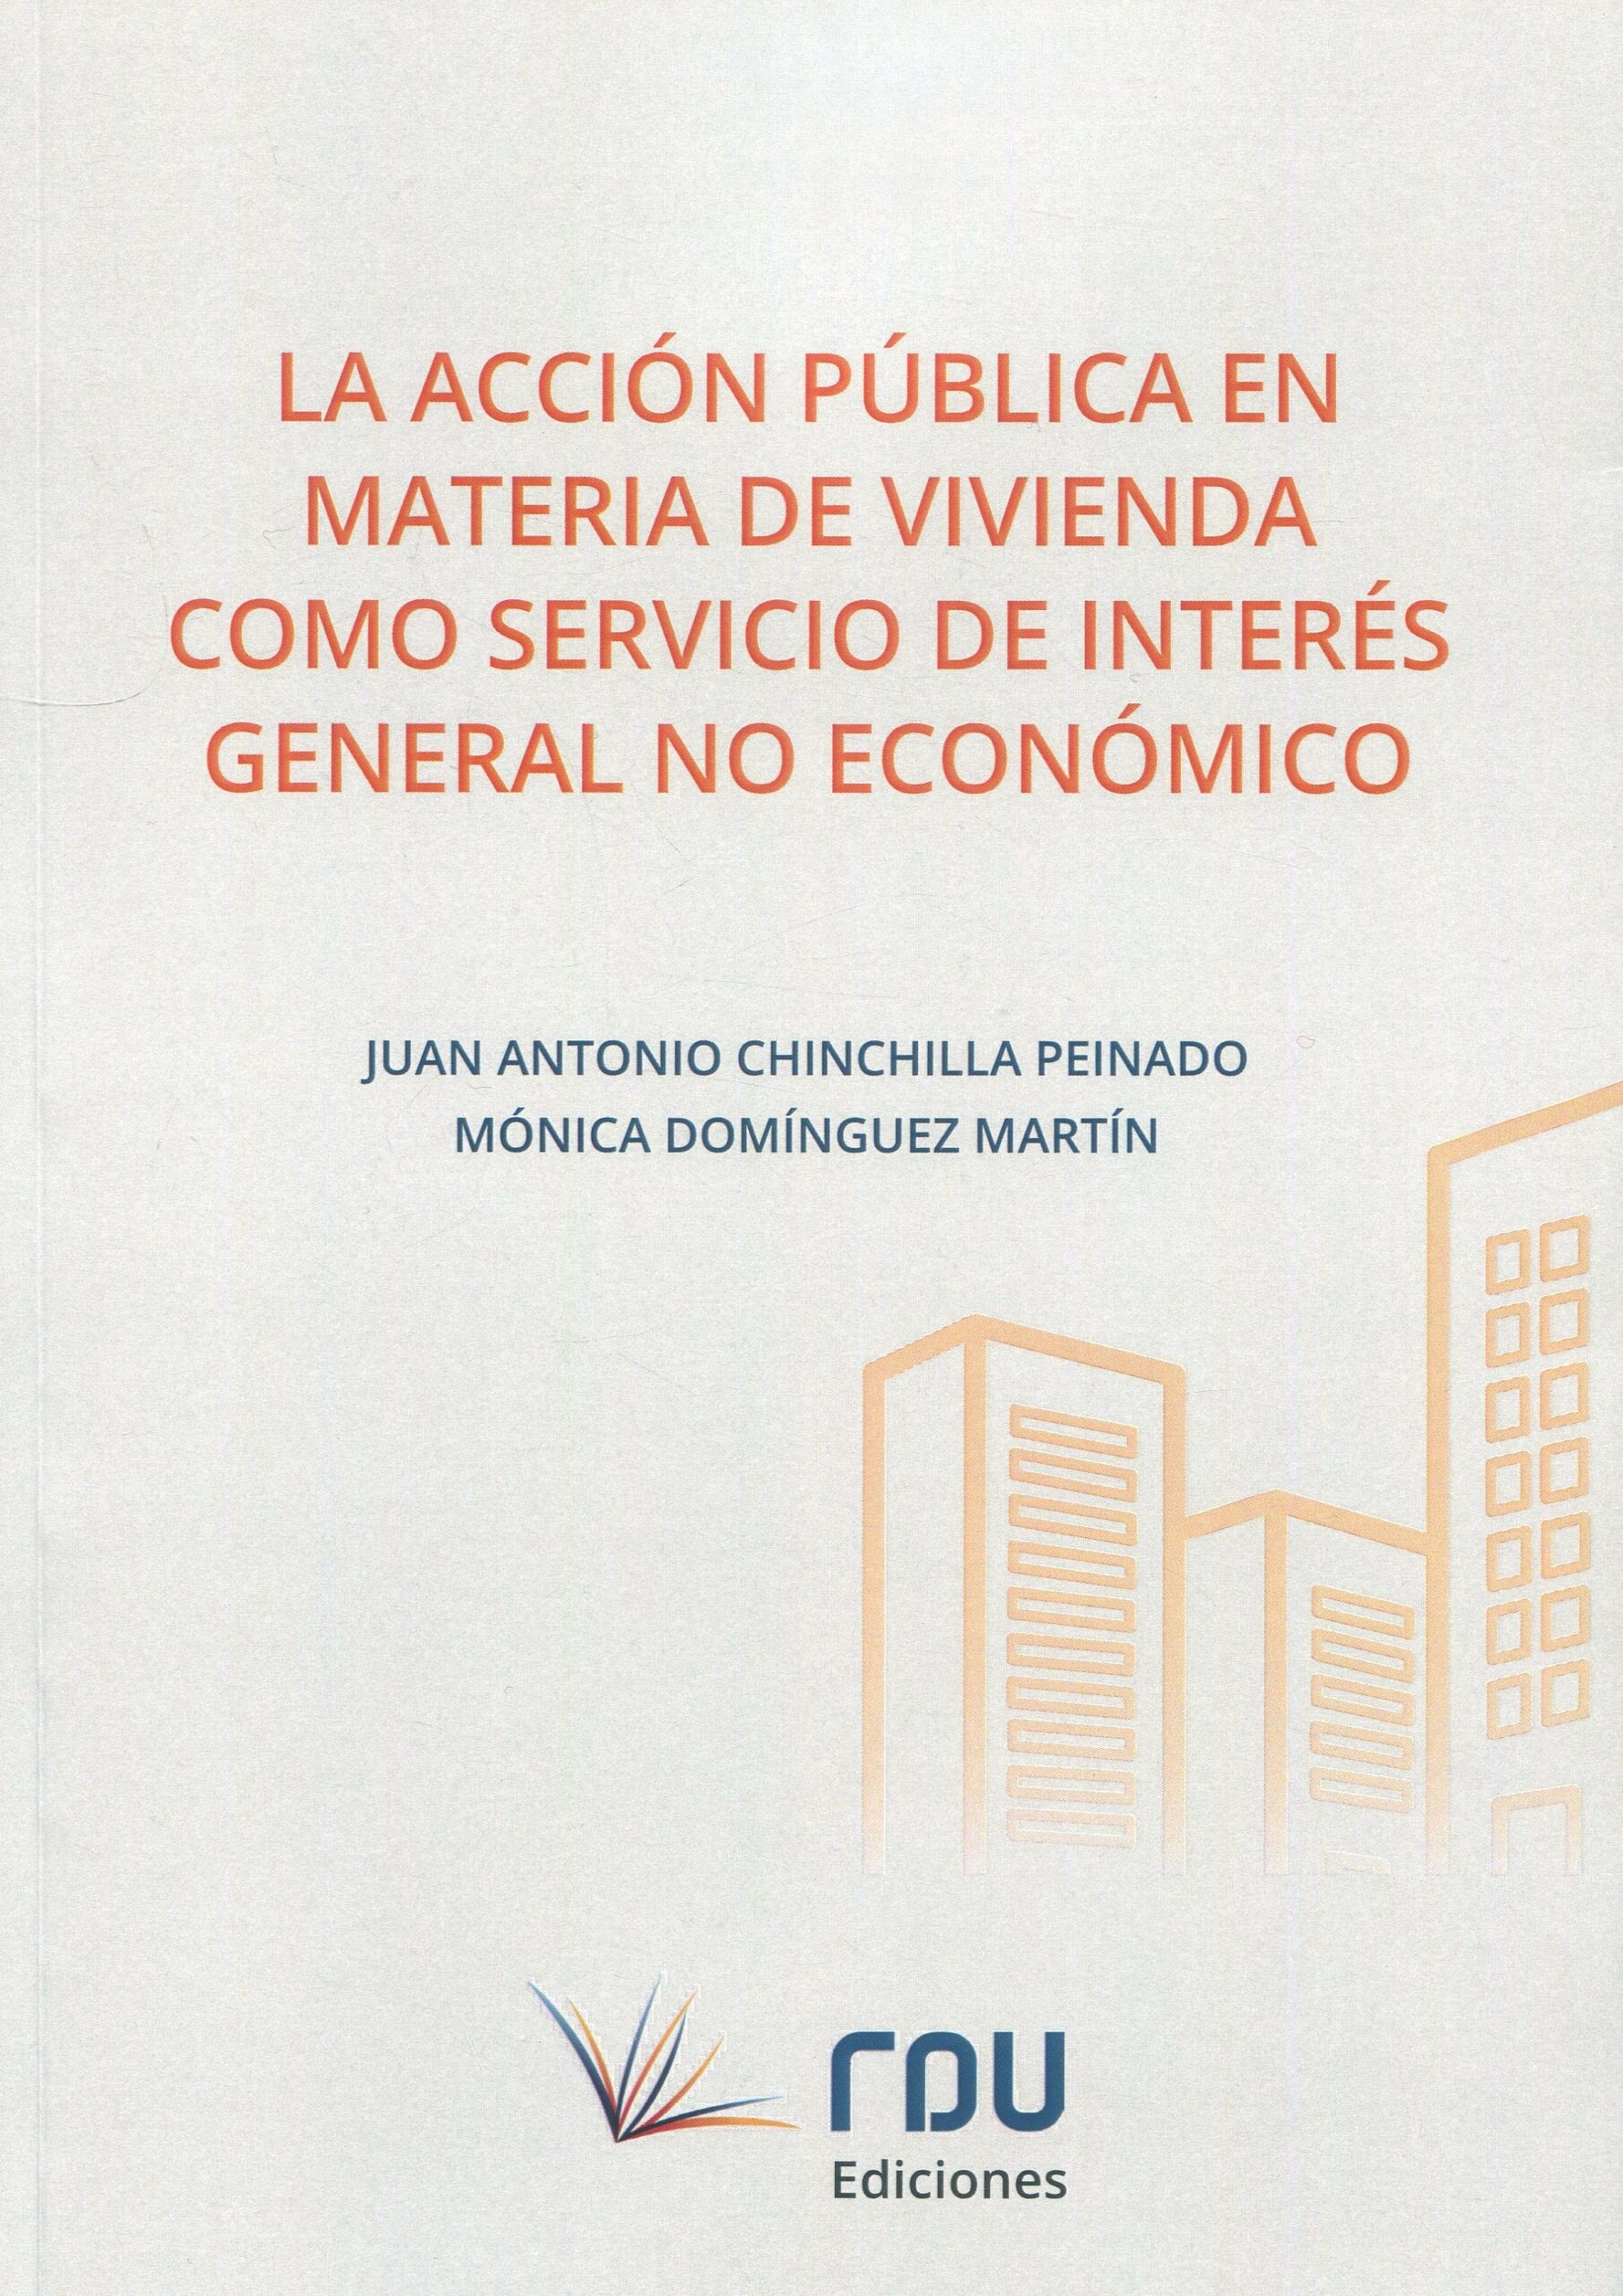 La acción pública en materia de vivienda como servicio de interés general no económico